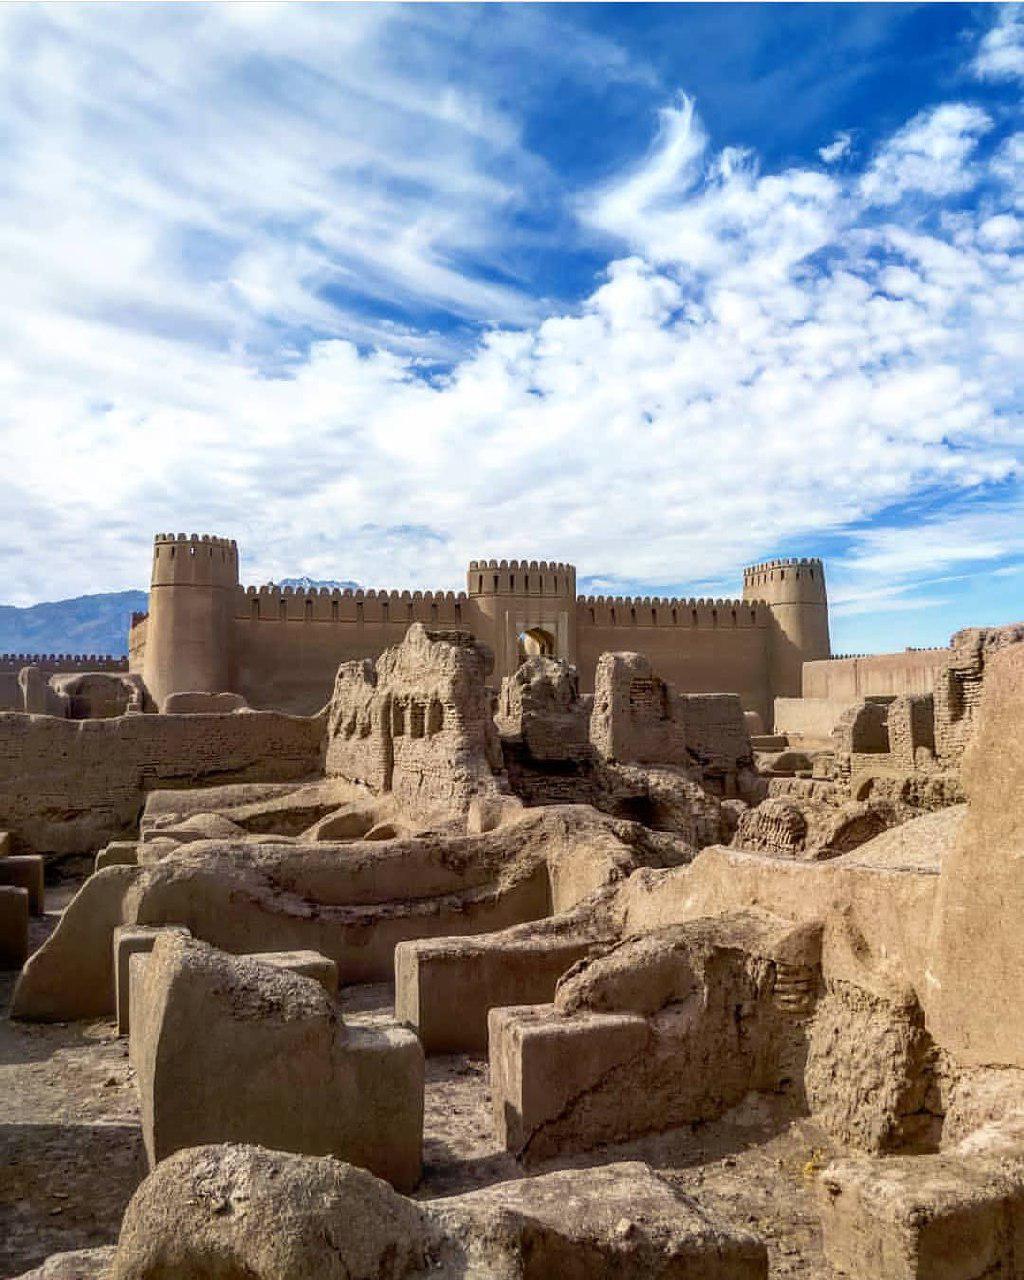 ارگ راین | دومین بنای خشتی بزرگ جهان در کرمان - ایران تراول